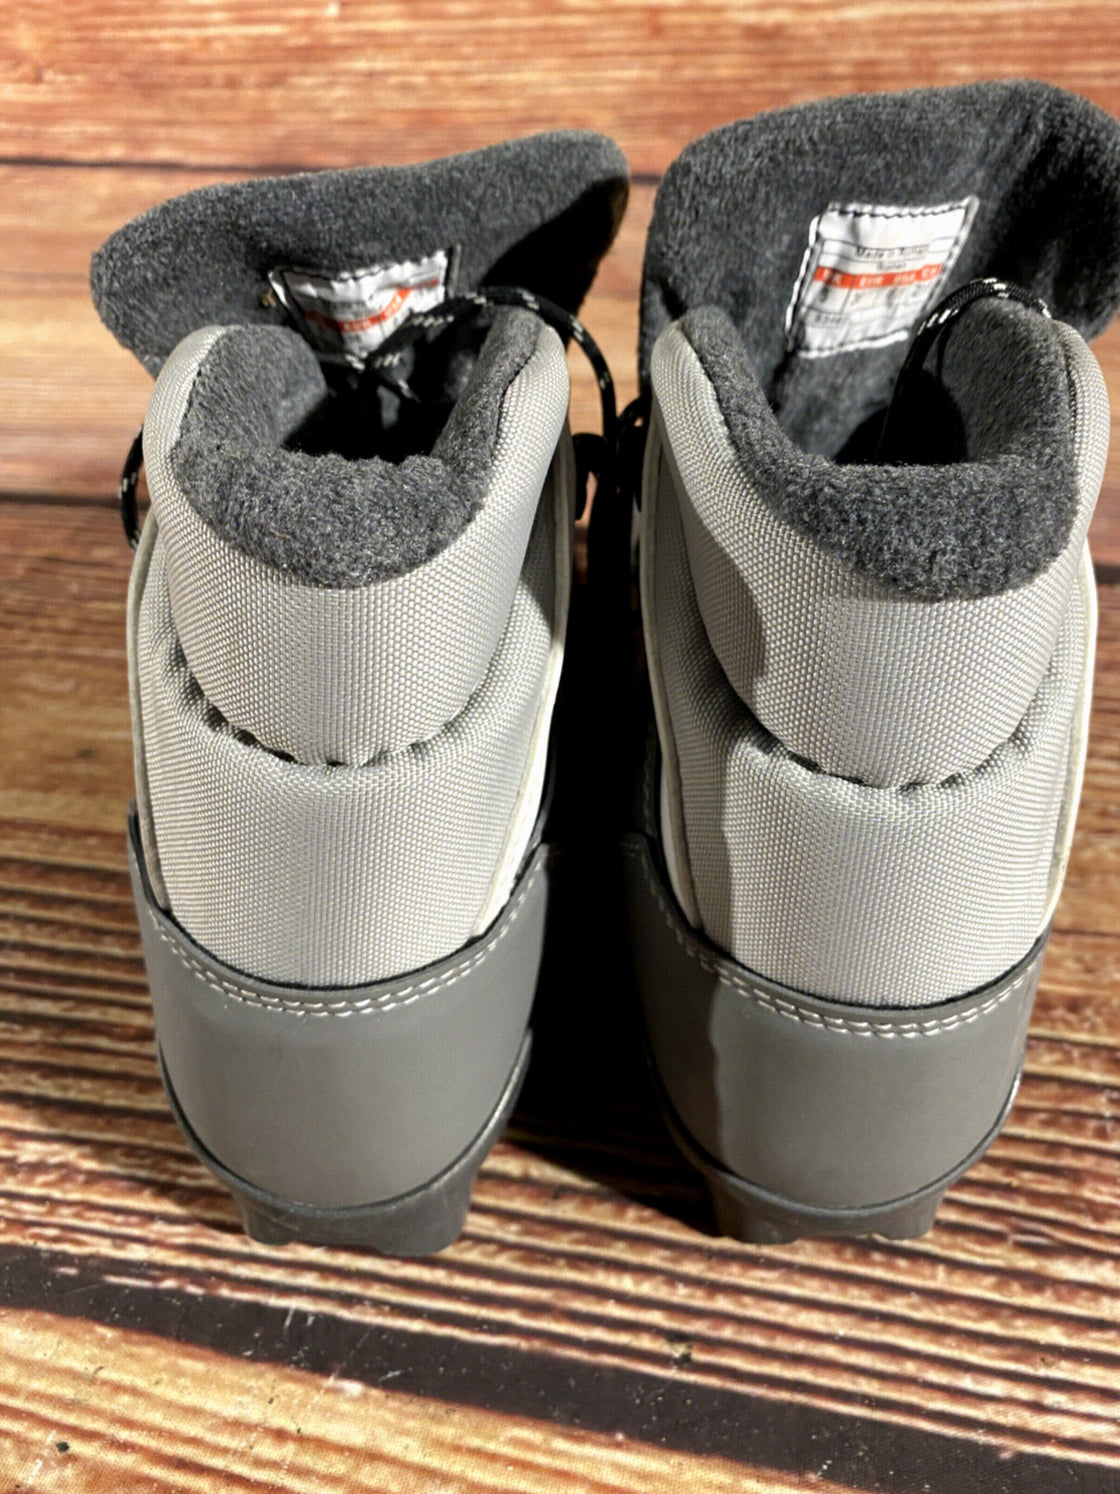 Salomon Siam 5 Nordic Cross Country Ski Boots Size EU38 US6.5 for SNS Profil